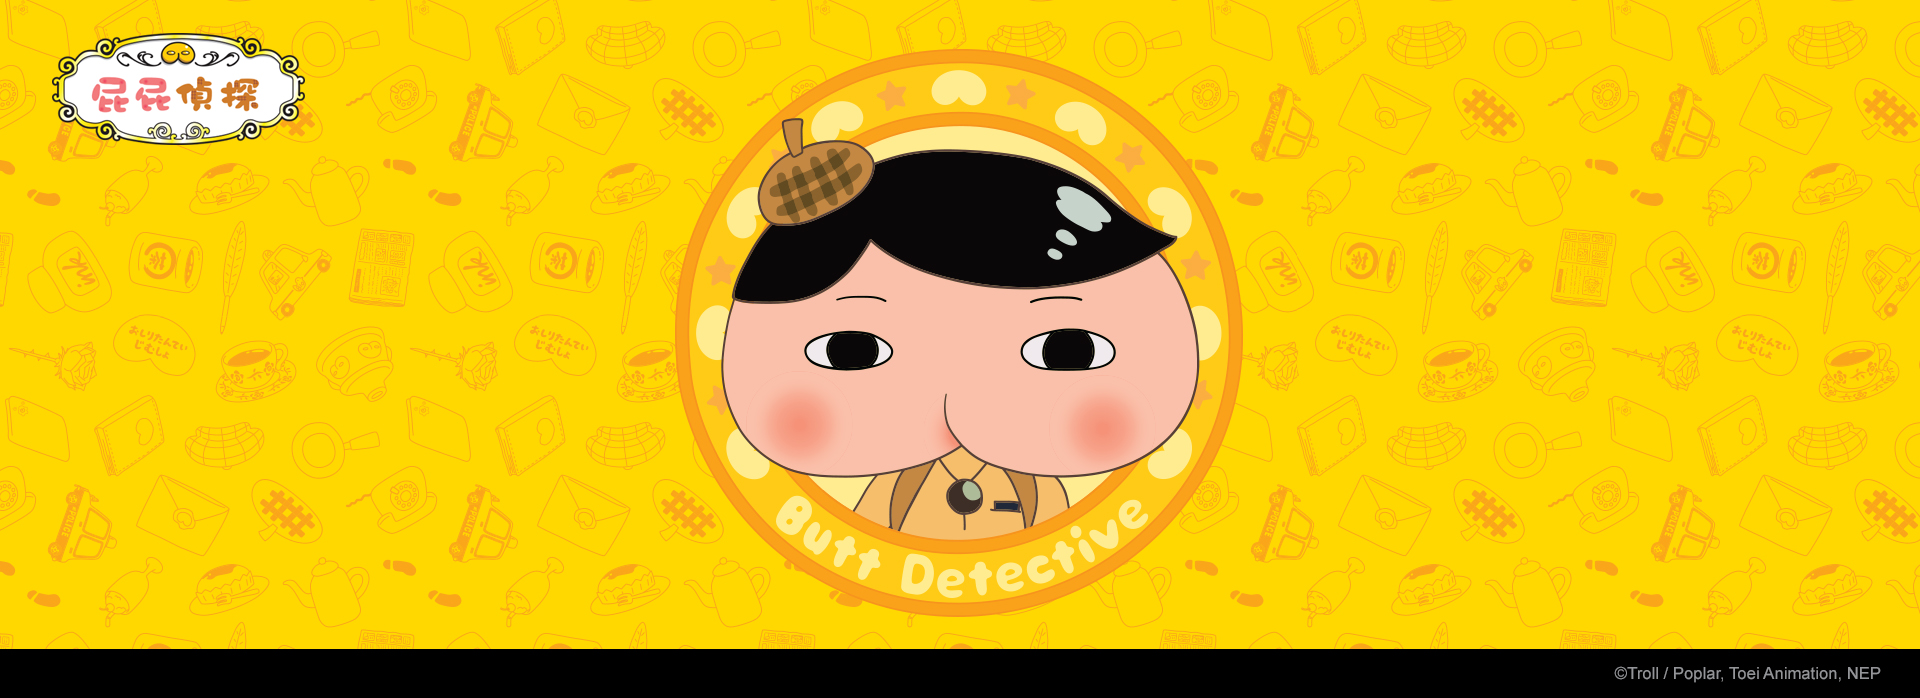 Butt Detective